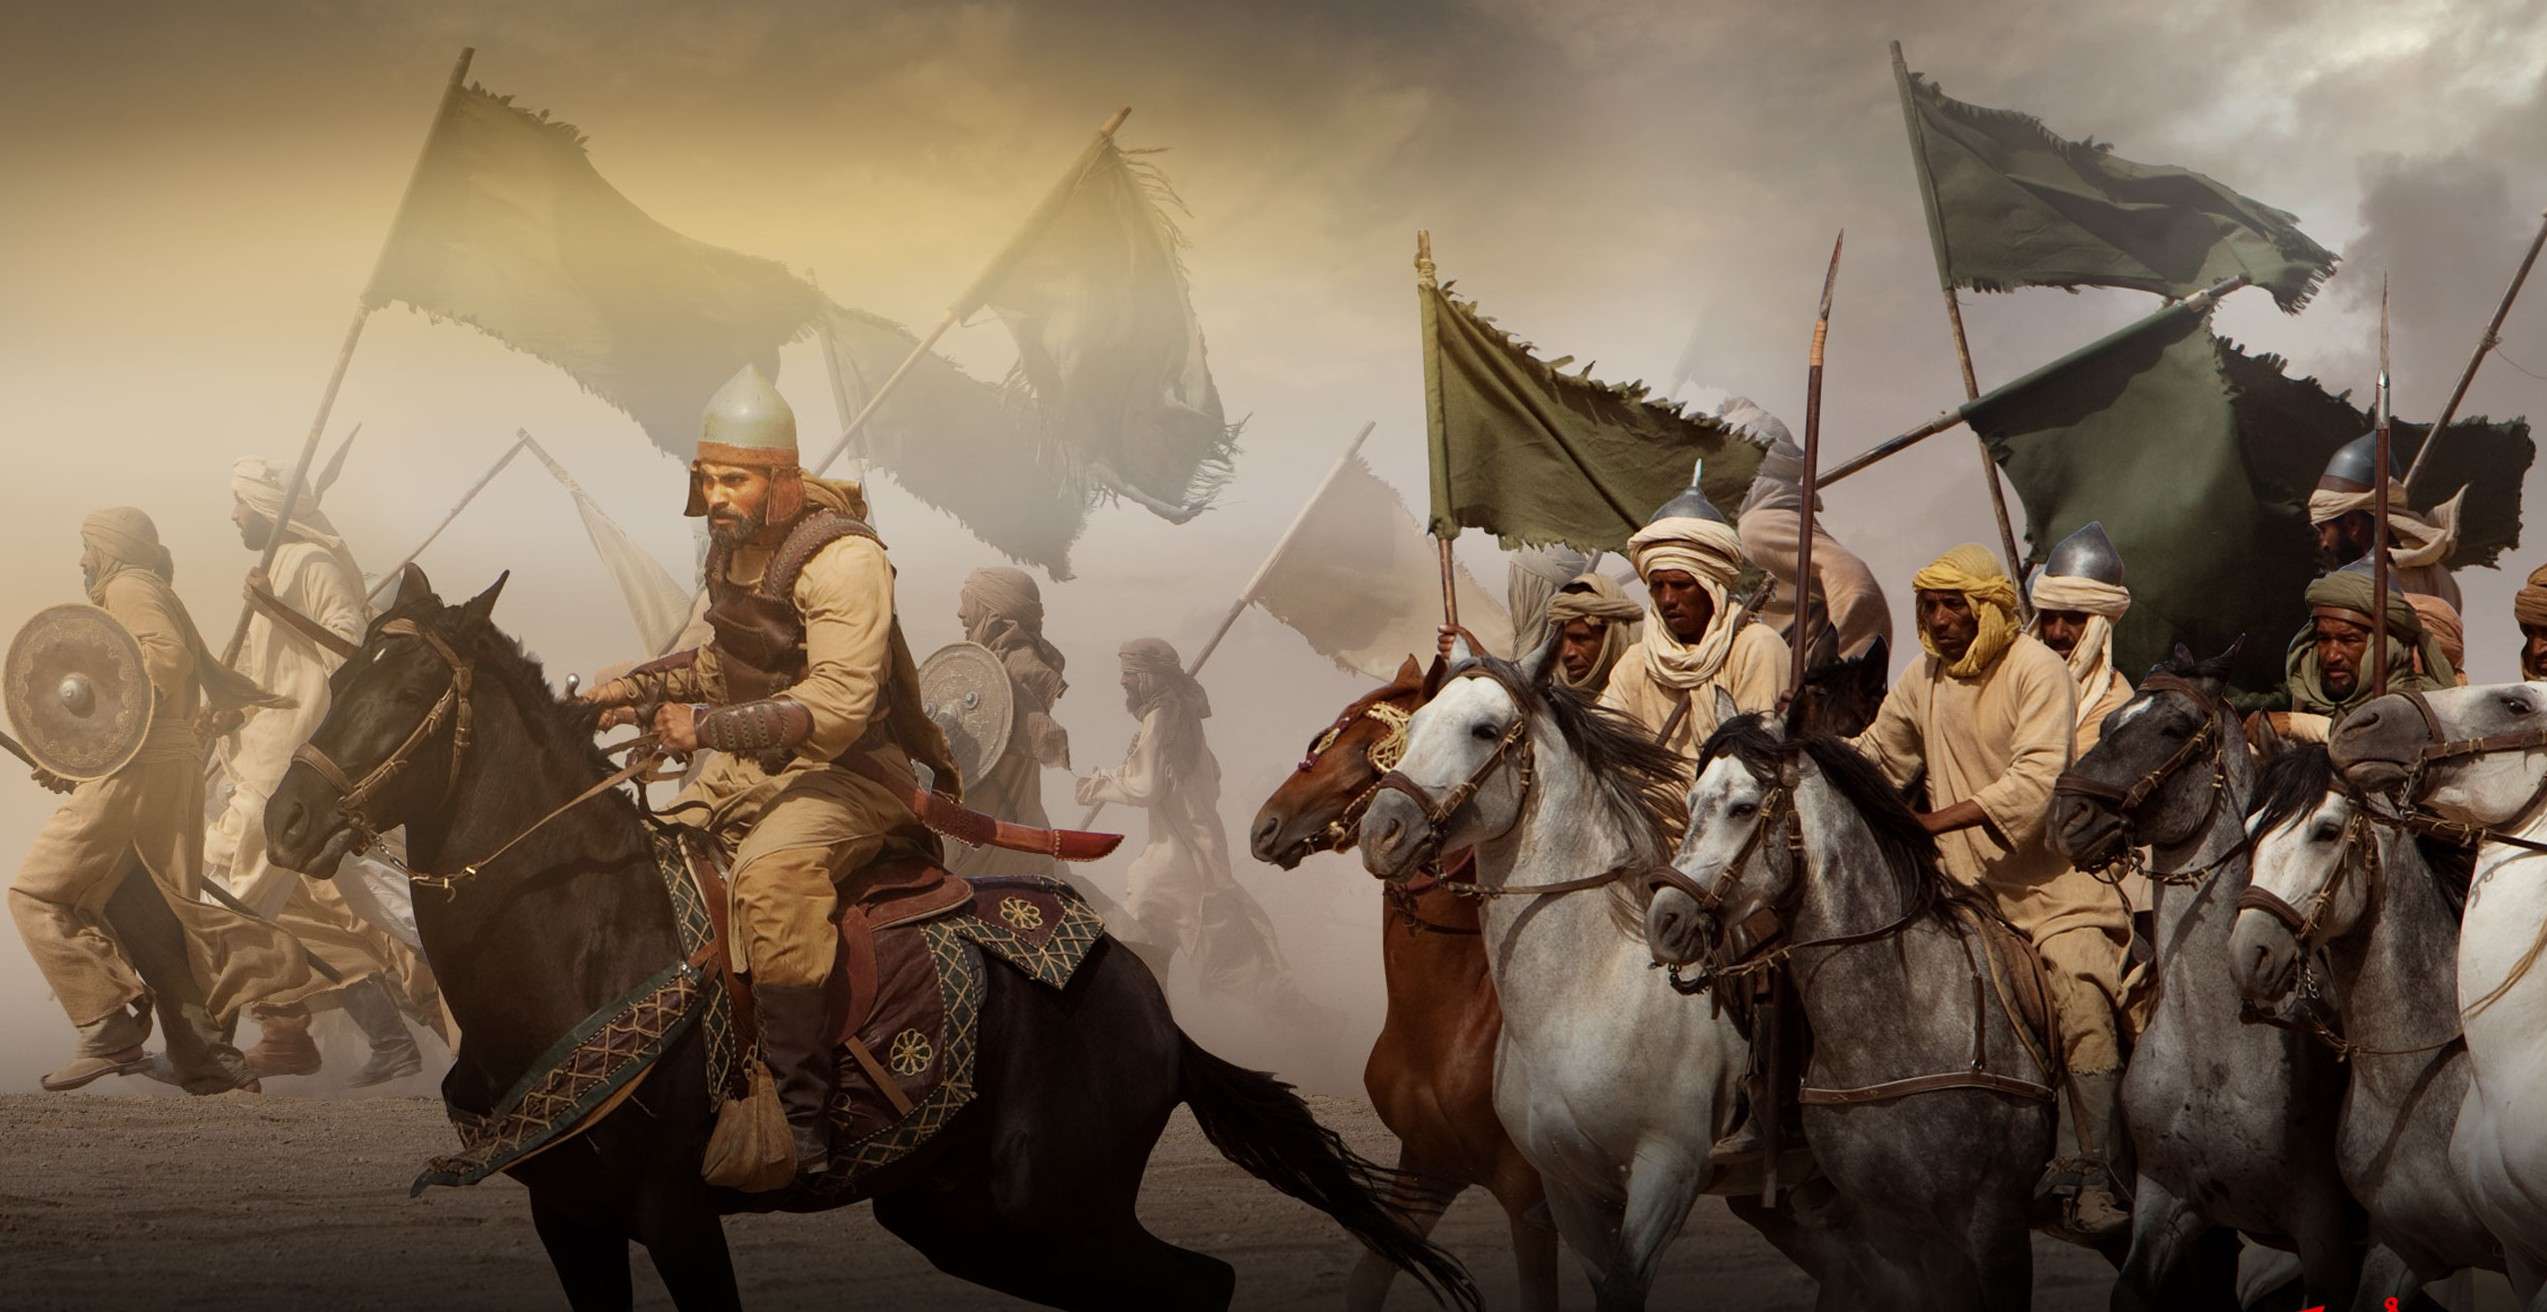 Мусульманская империя. Халид ибн Валид битва при Бадре. Арабский воин Халид ибн Валид. Арабское завоевание Персии. Битва при Бадре 7 век.